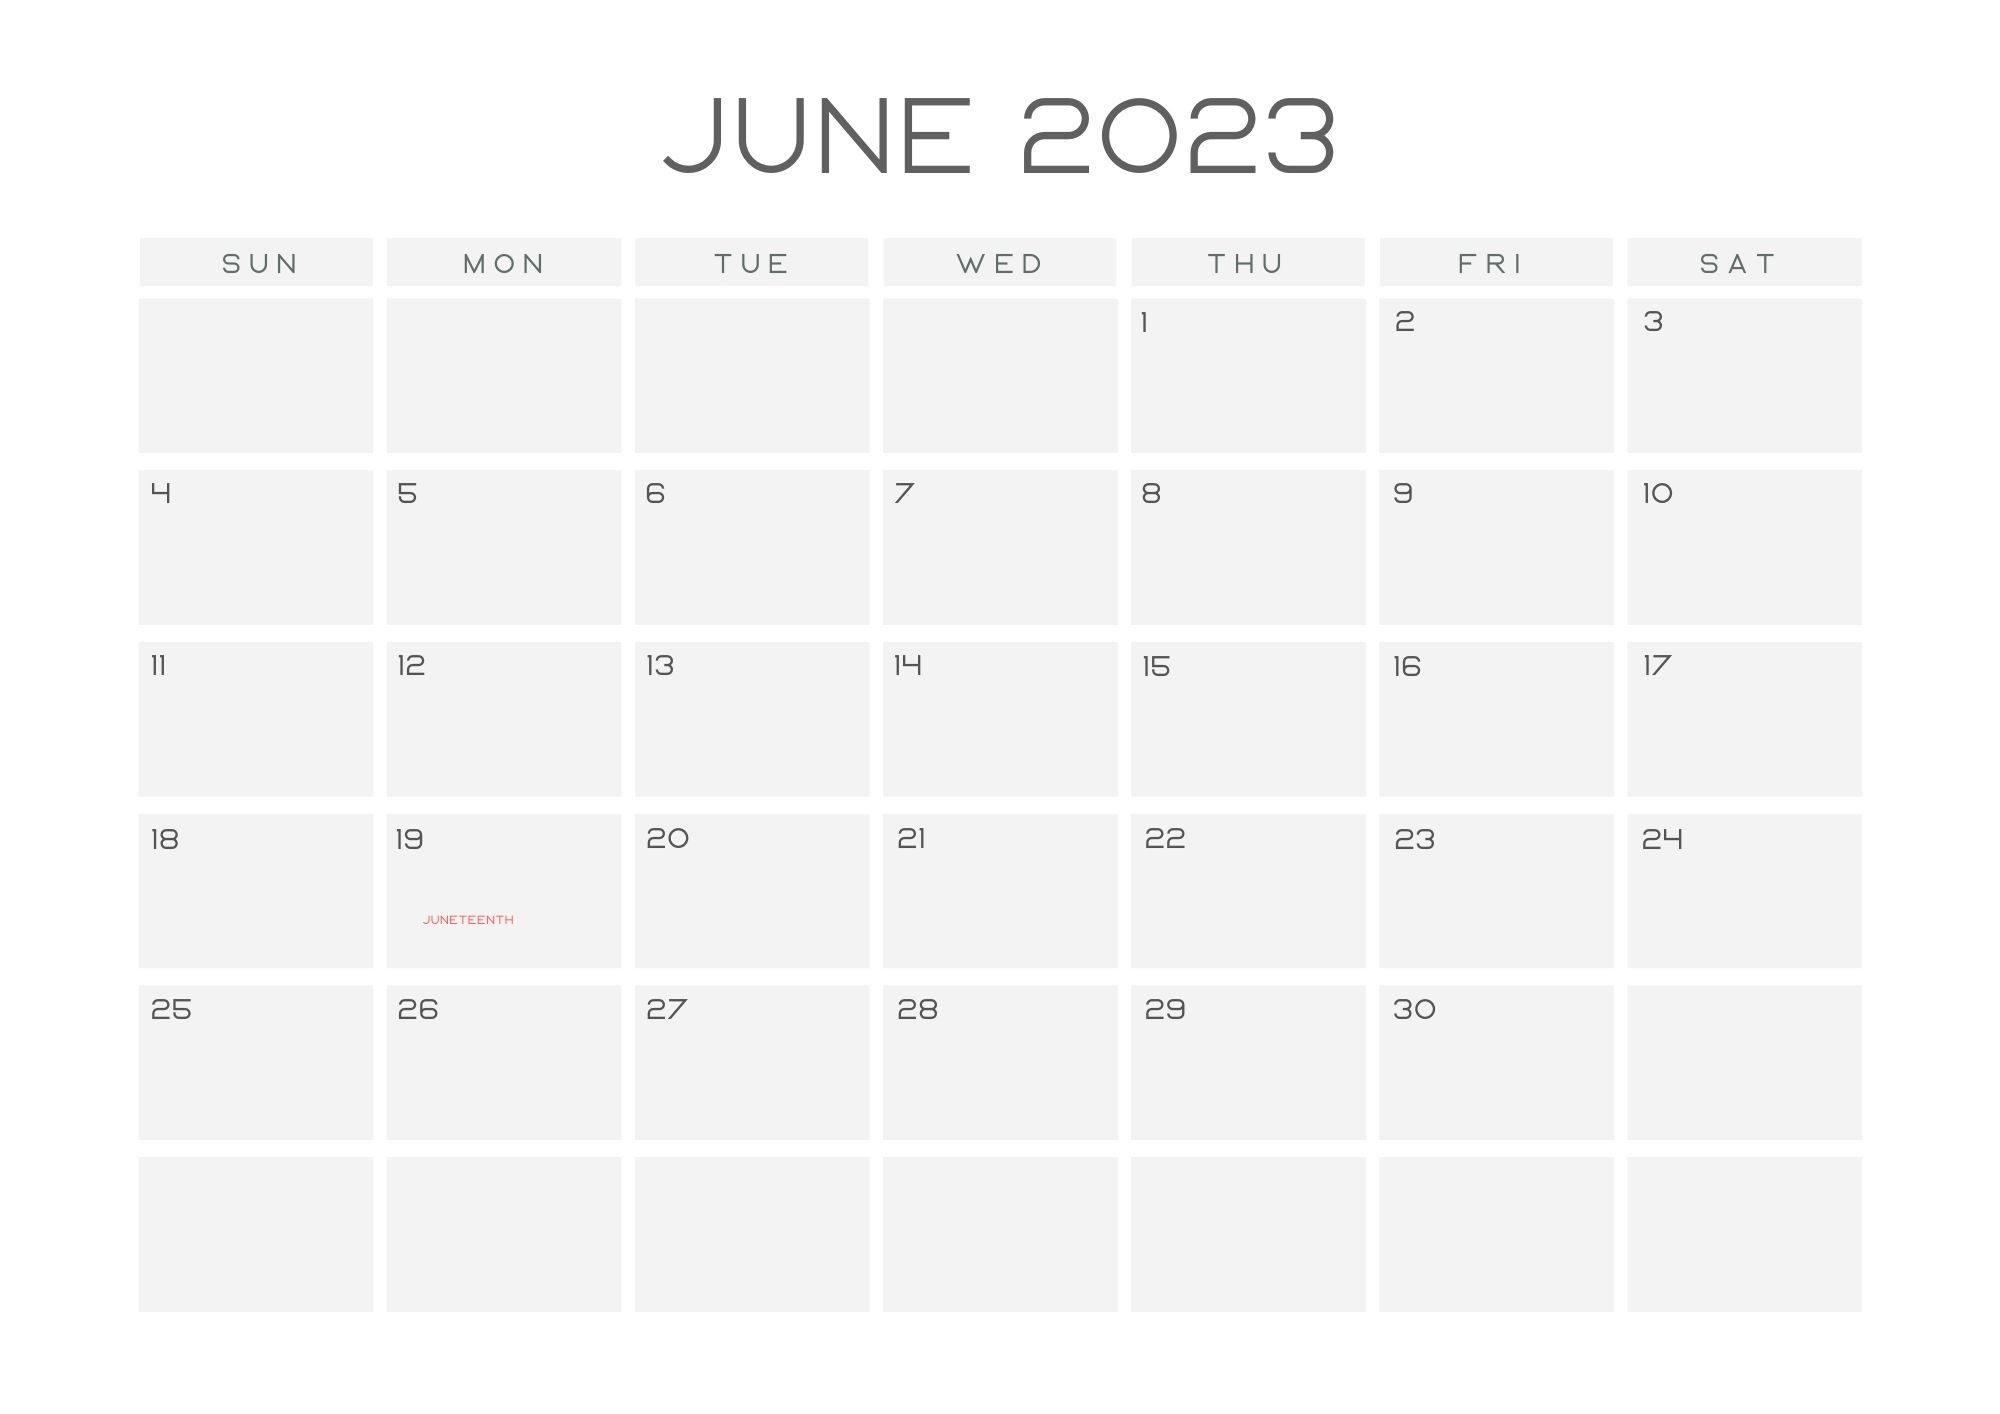 June Holidays 2023